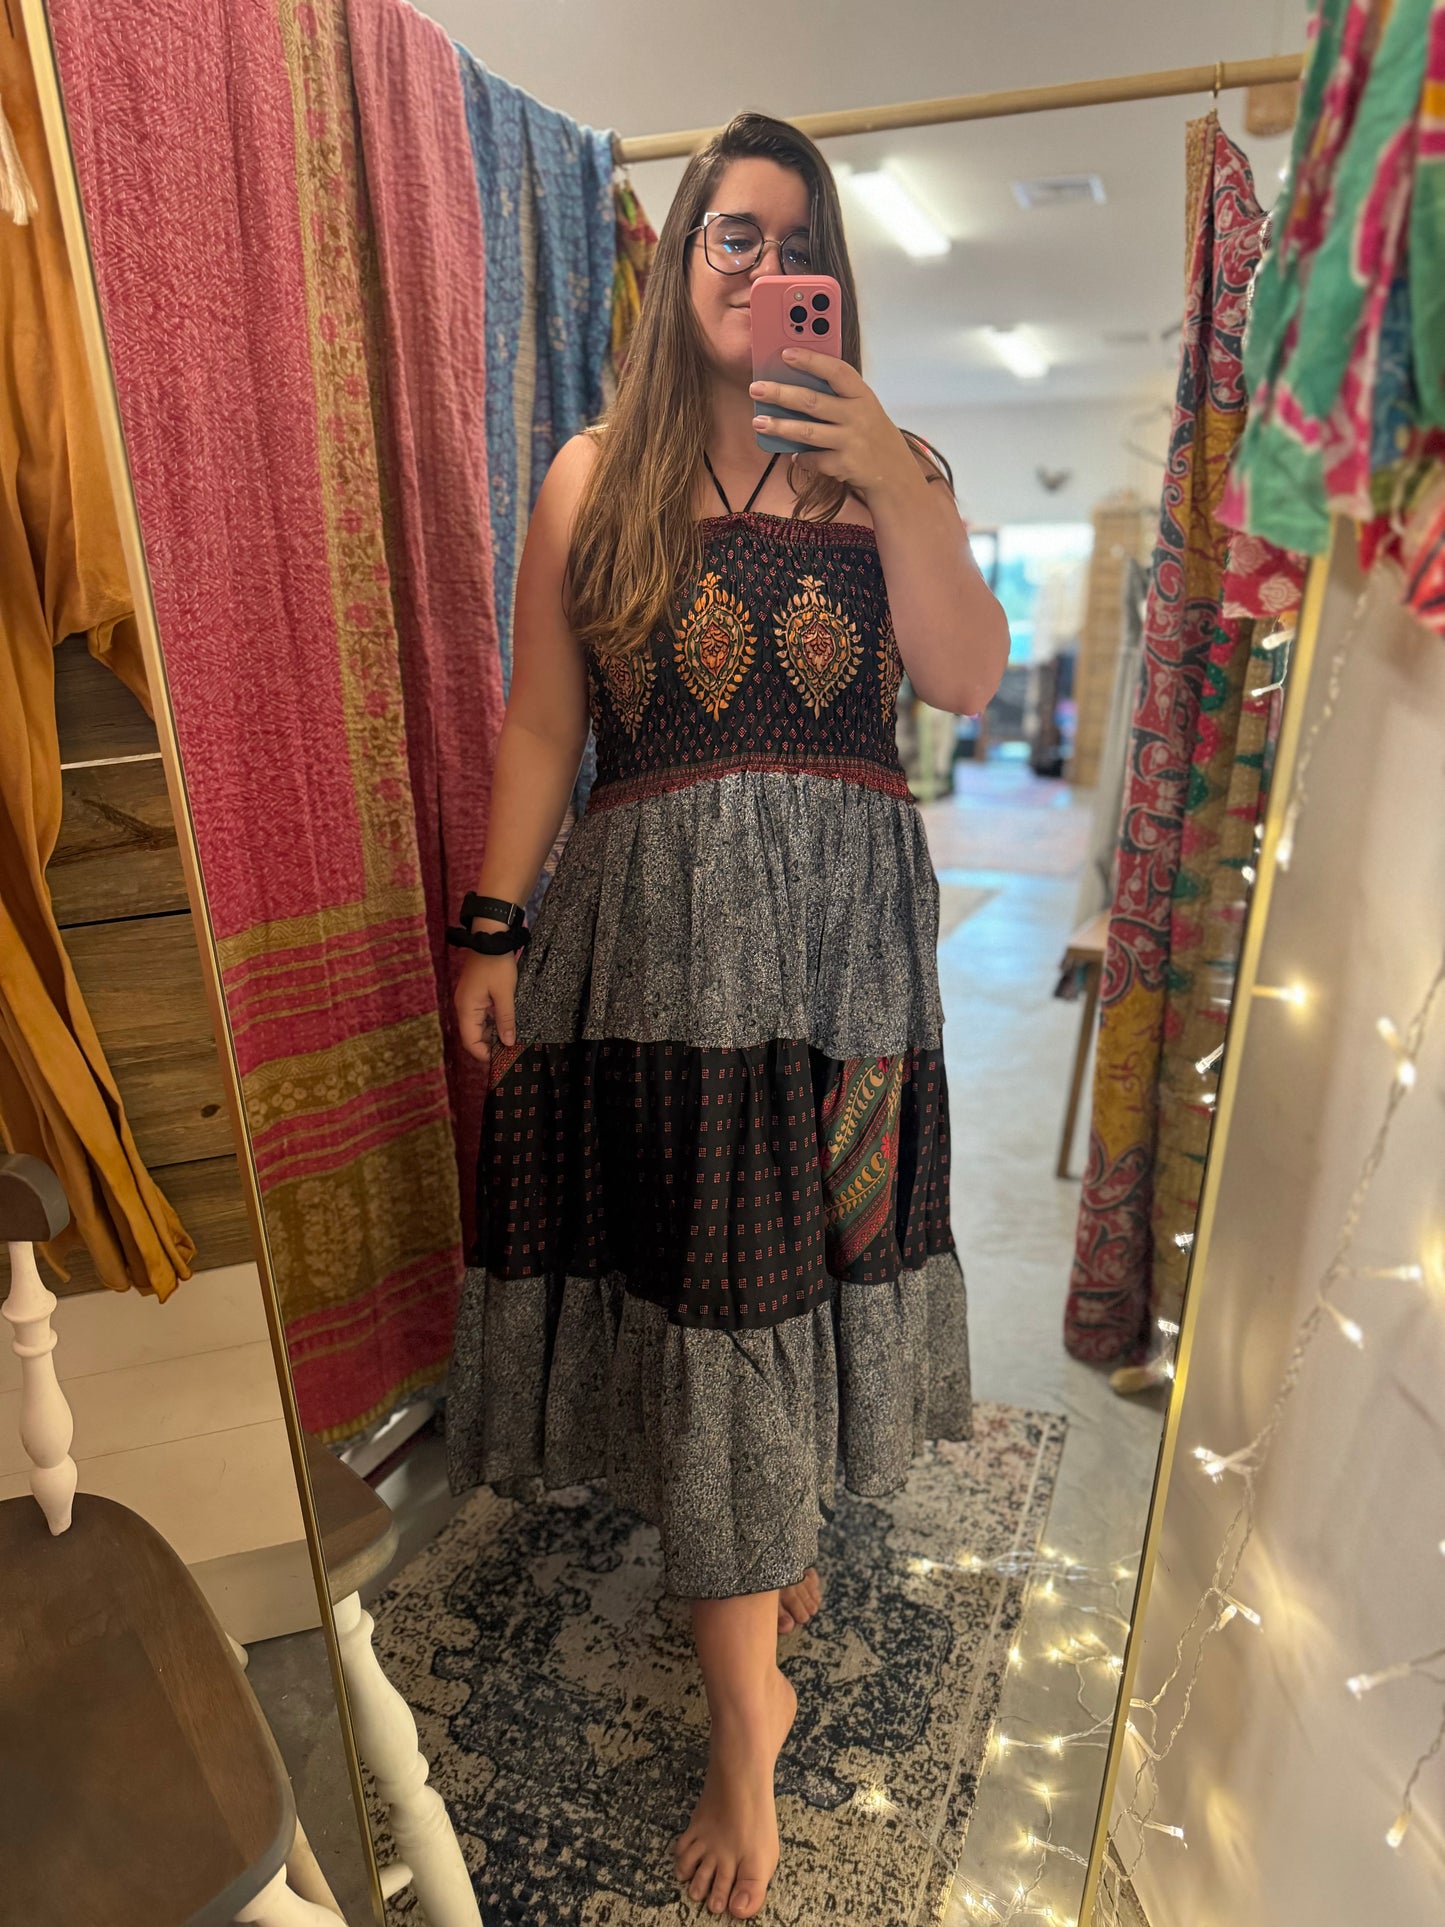 Sedona Patchwork Sari Dress/Skirt OOAK